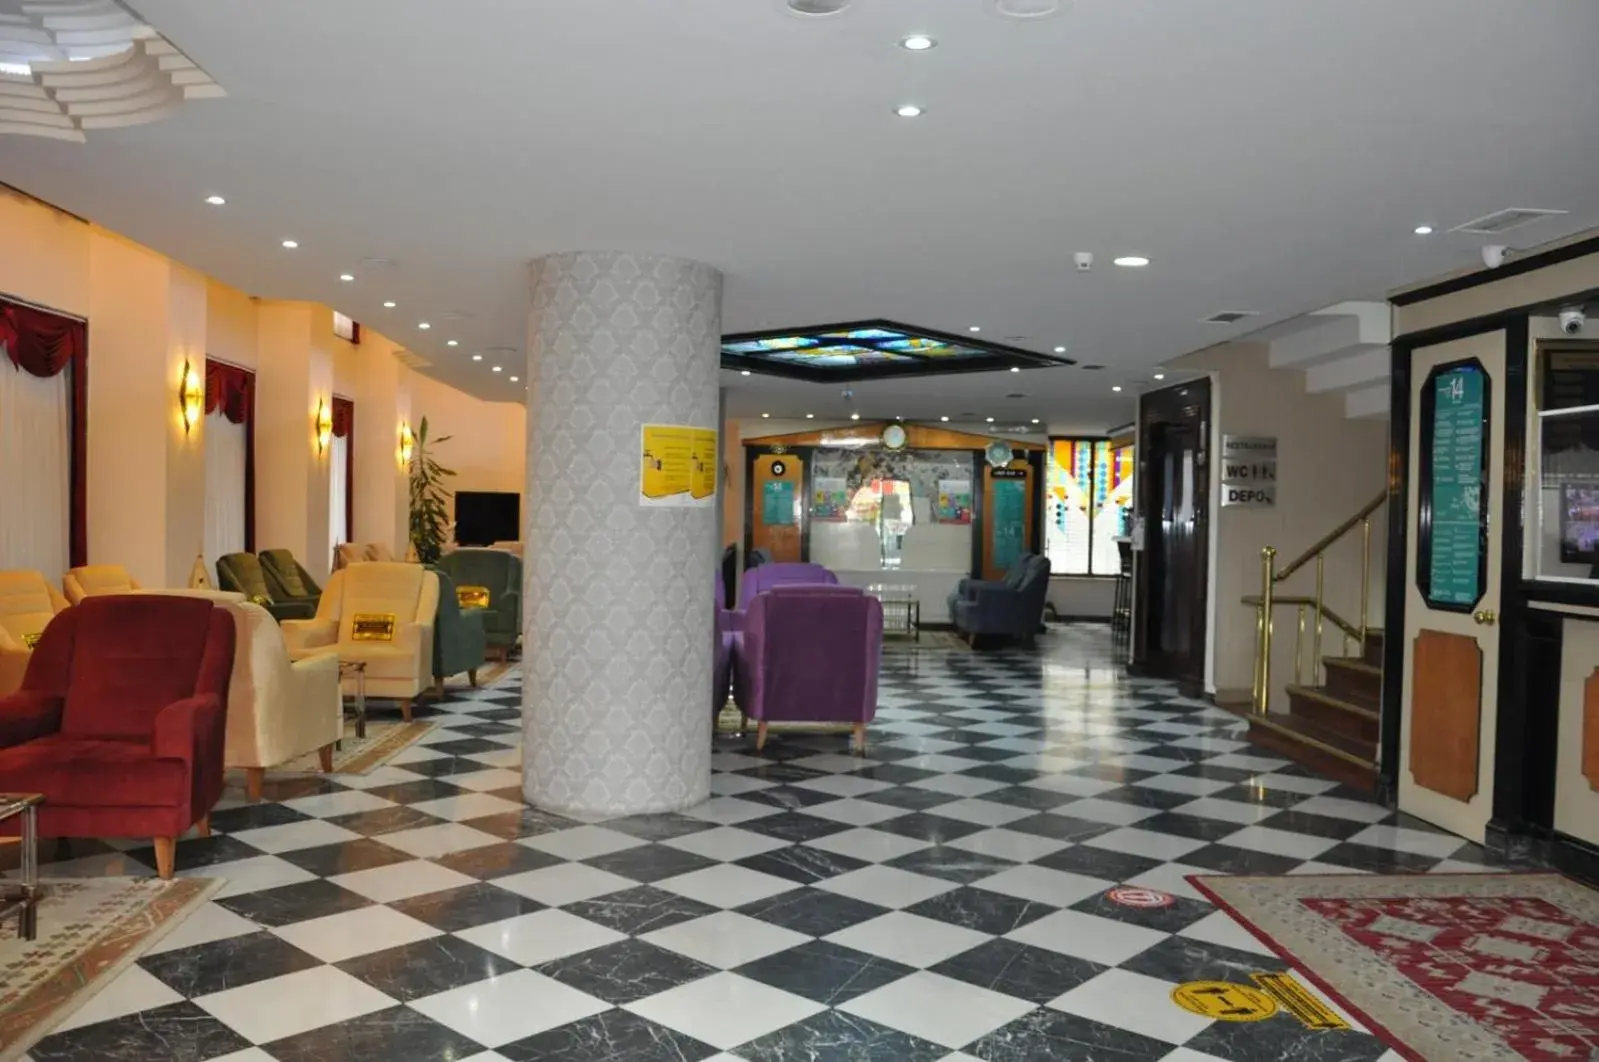 Lobby or reception, Lobby/Reception in Tayhan Hotel